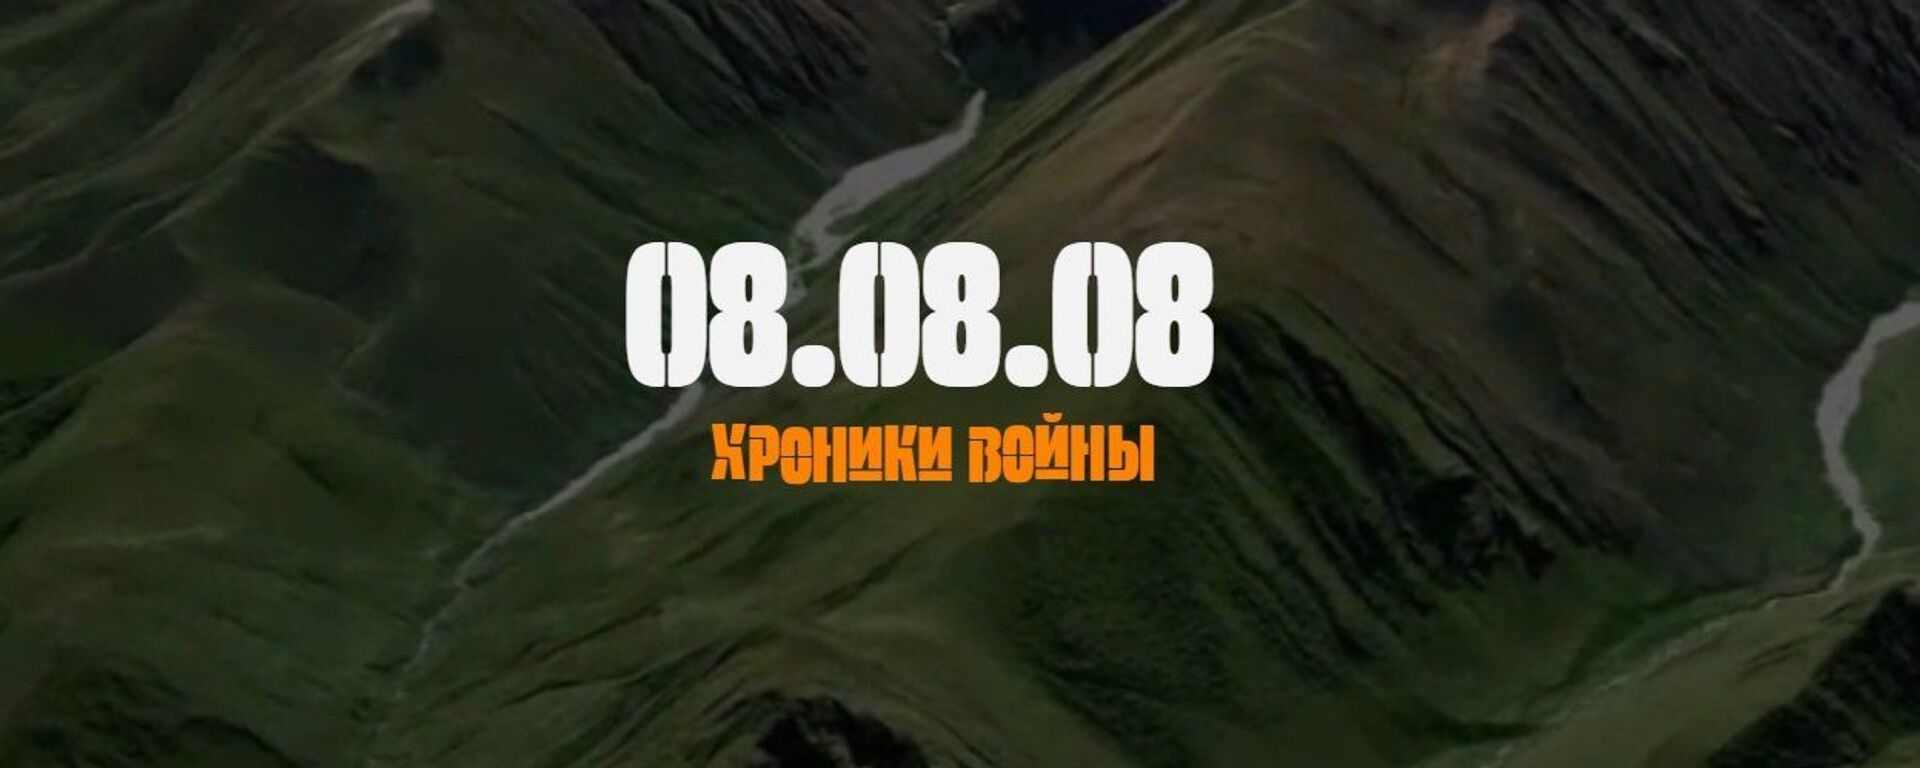 Хроники войны 08.08.08 - Sputnik Южная Осетия, 1920, 08.08.2019